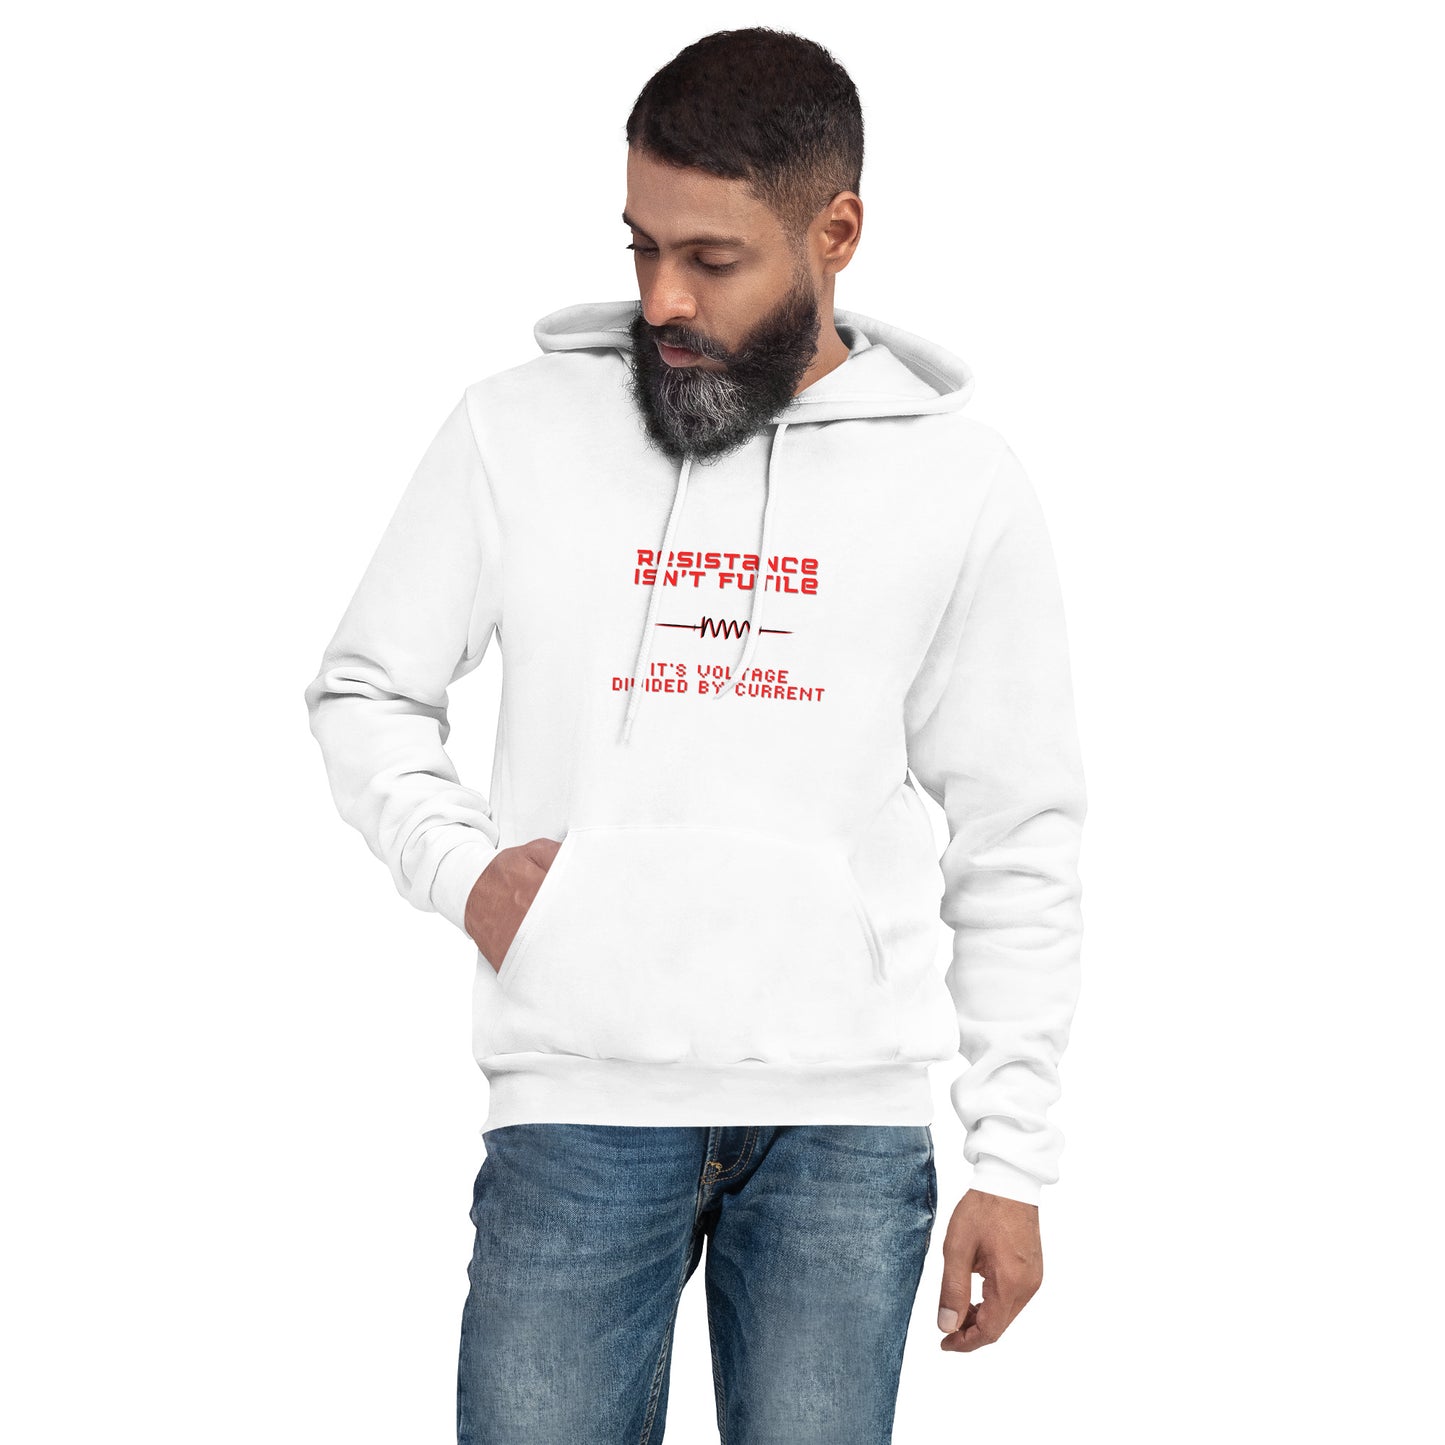 Resistance Isn't Futile Unisex hoodie Sweatshirt Funny Gift